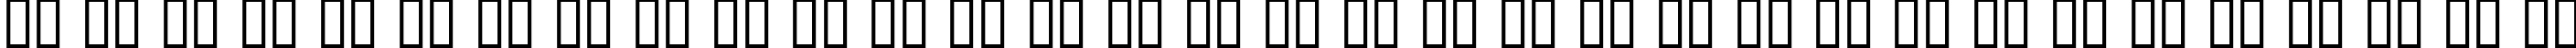 Пример написания русского алфавита шрифтом Elgethy Upper Bold